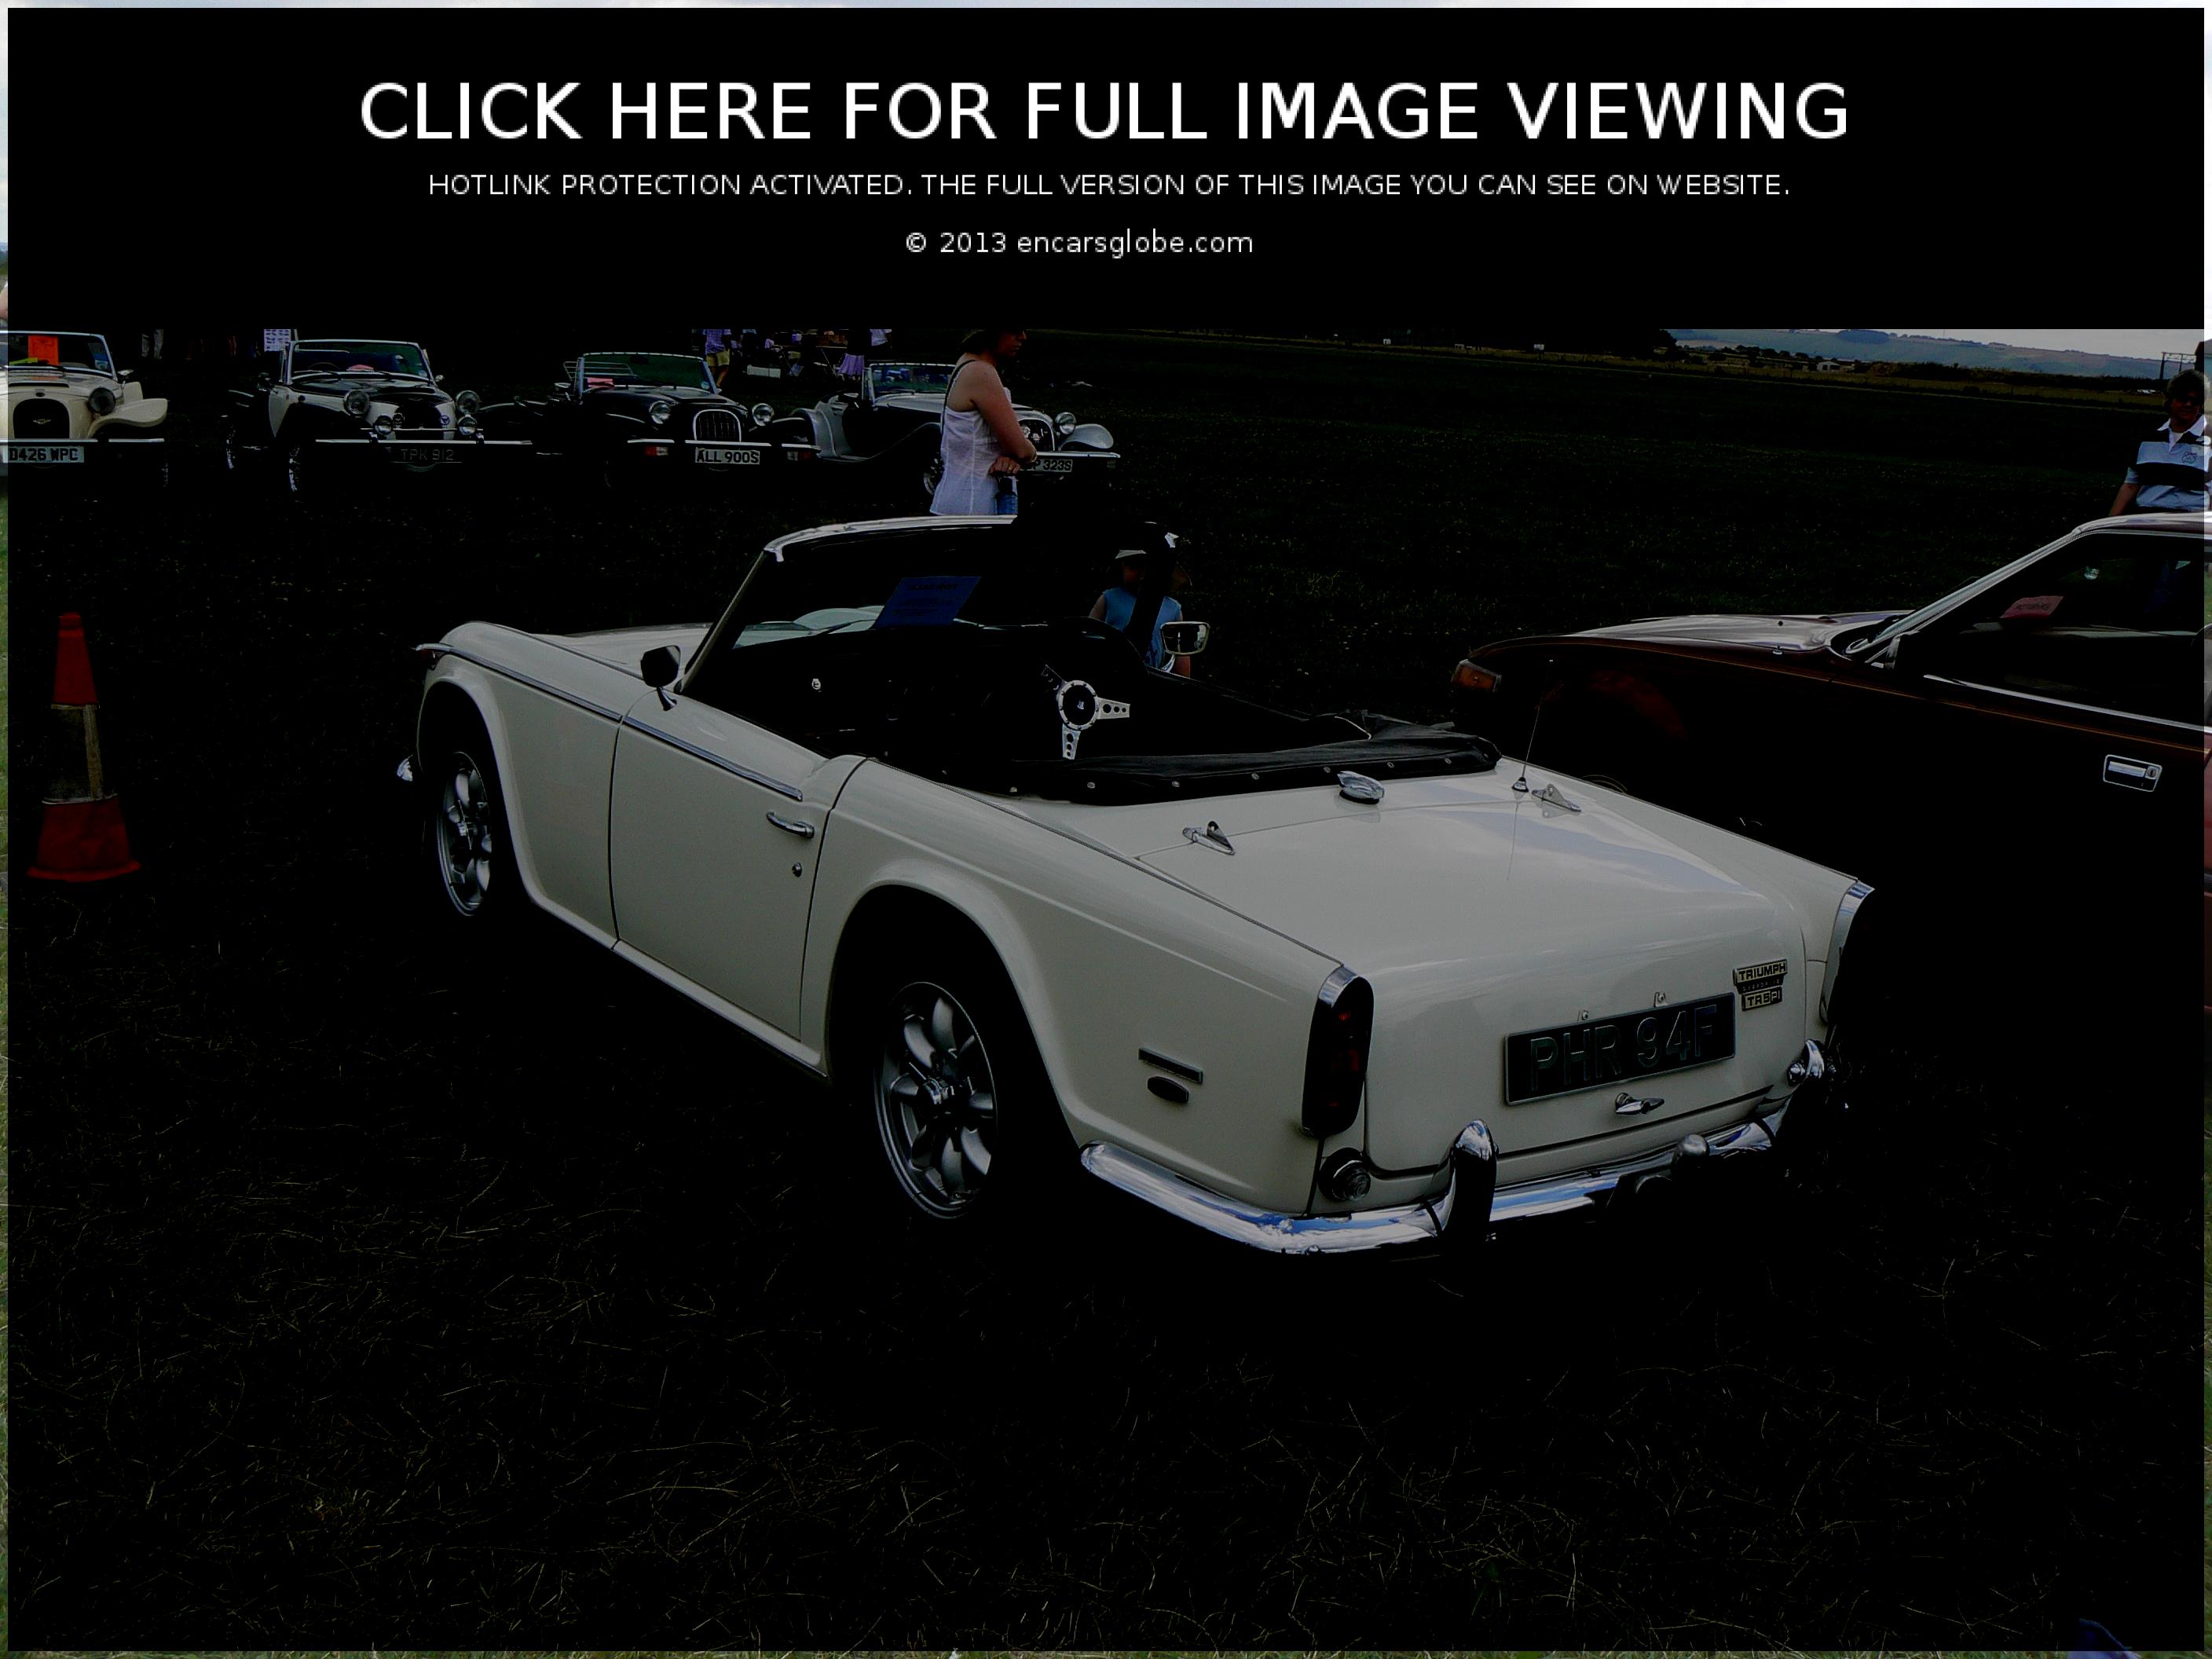 Triumph TR5 Pi: Galerie de photos, informations complètes sur le modèle...